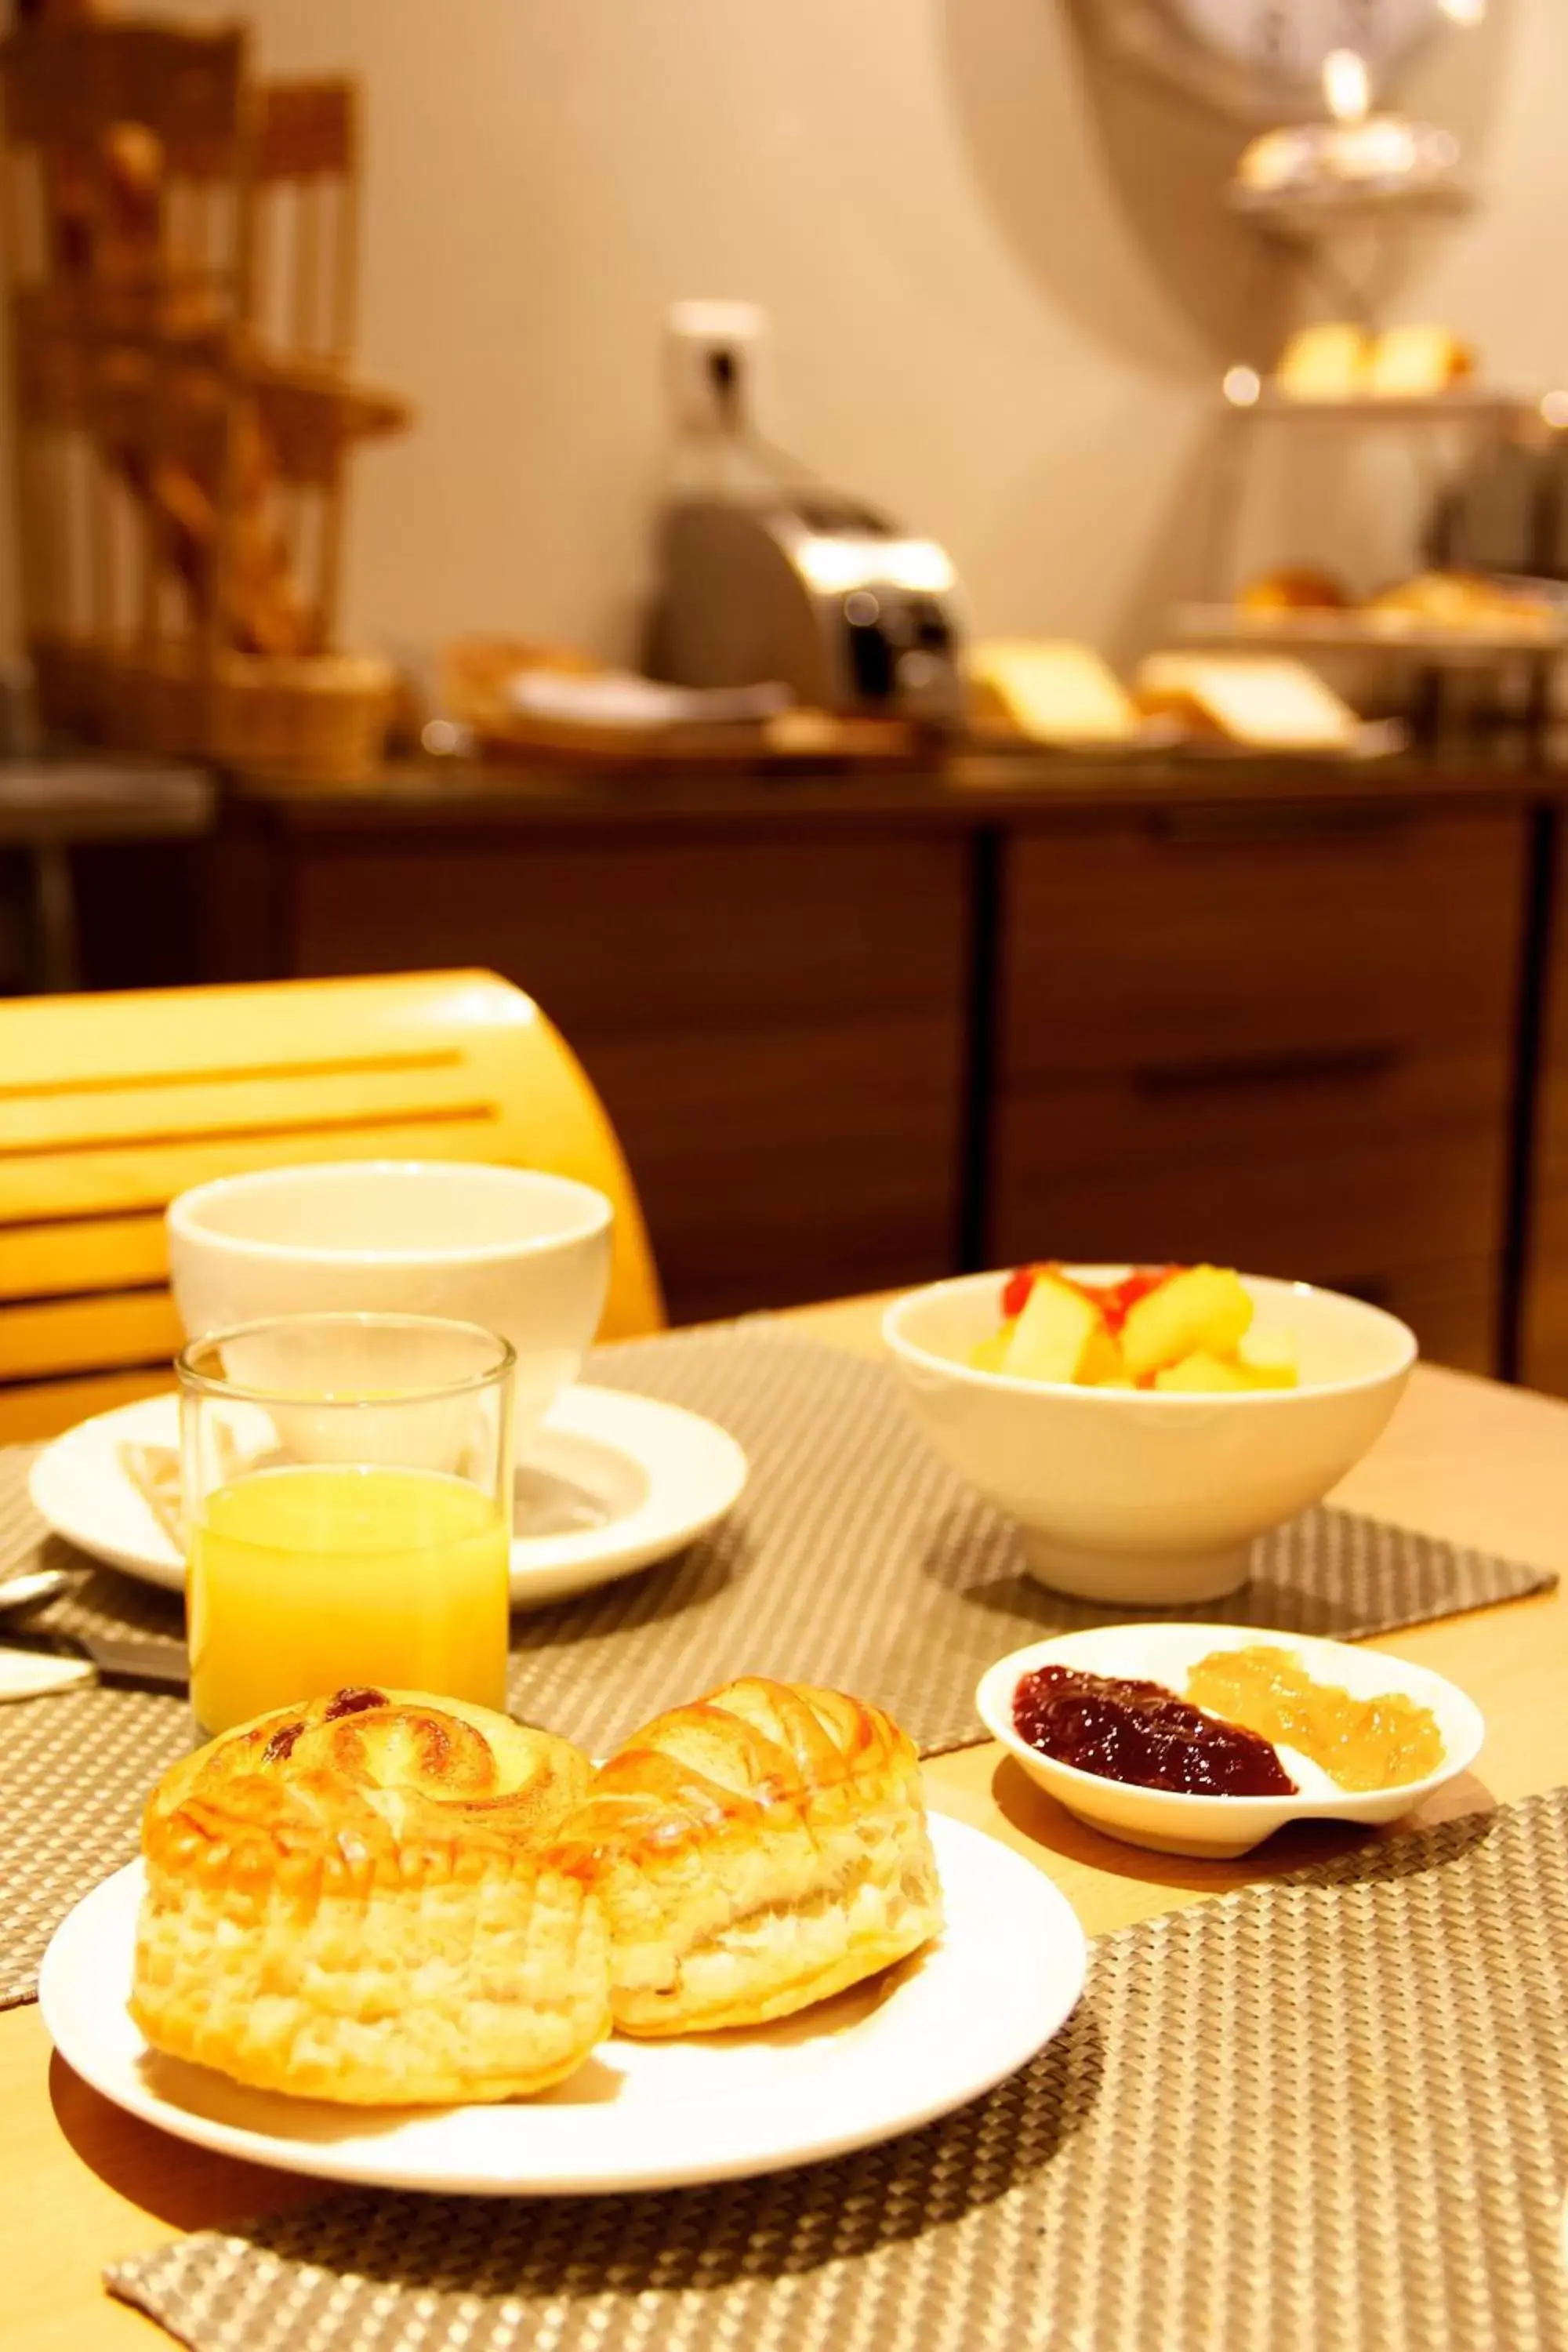 Buffet breakfast in Hotel Le Richemont